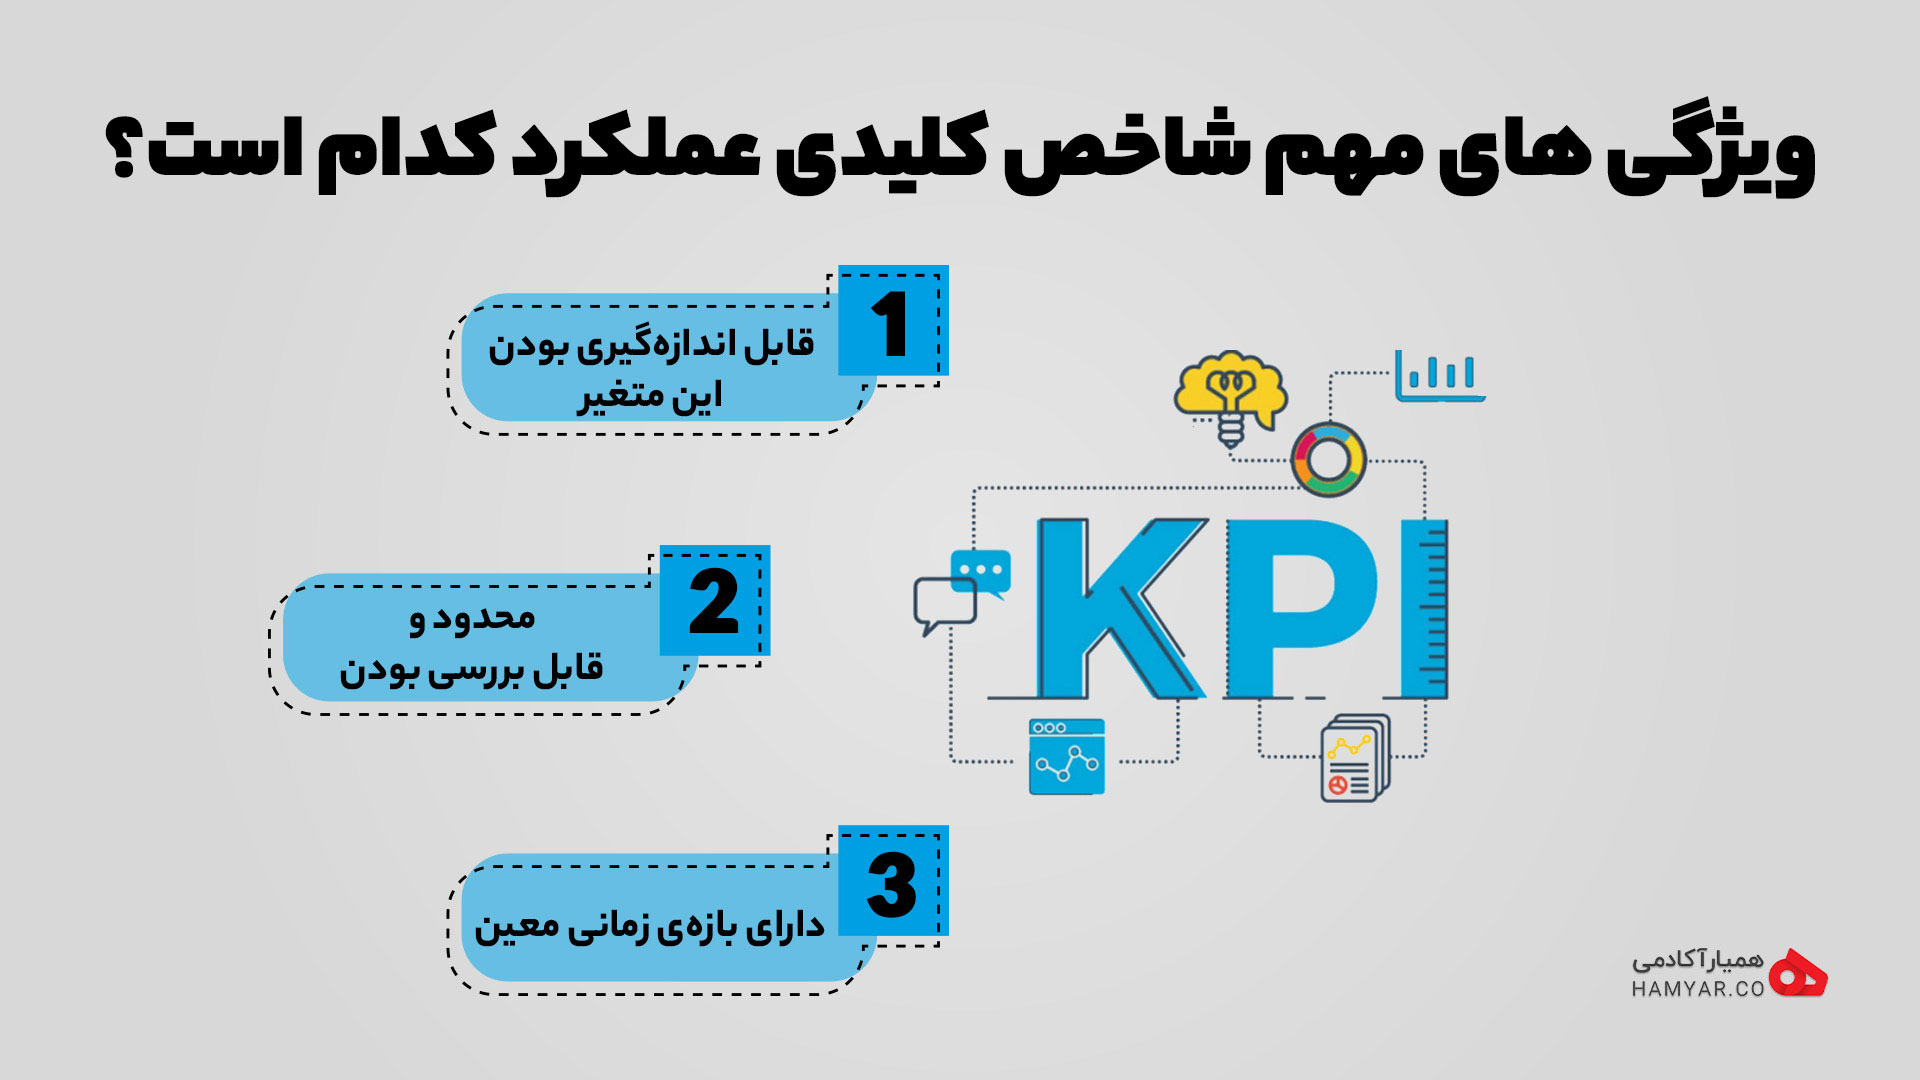 وردپرس تم | چگونه می توان شاخص کلیدی عملکرد یا kpi یک سازمان را مشخص کرد؟